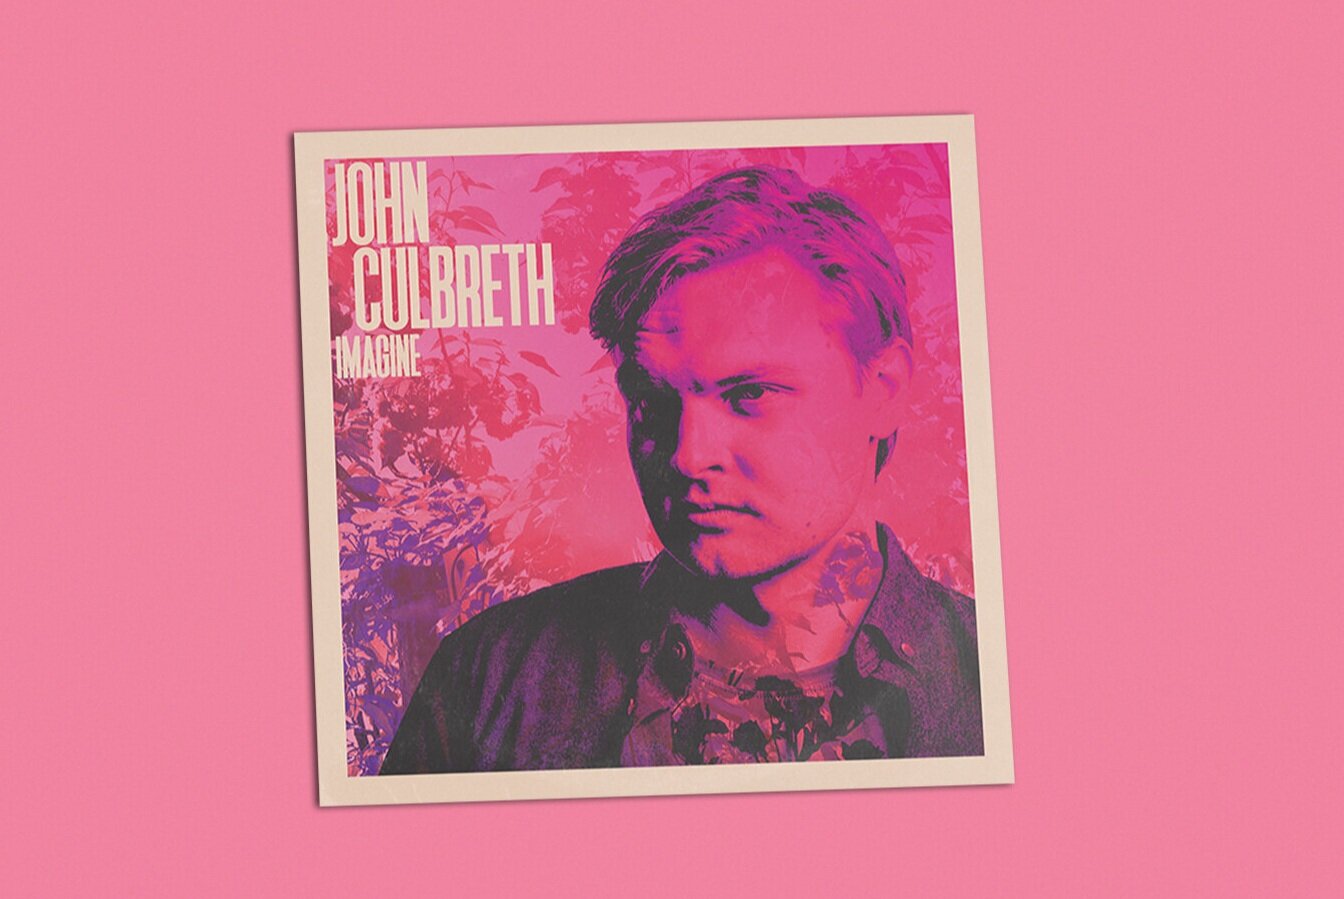 John Culbreath - Imagine